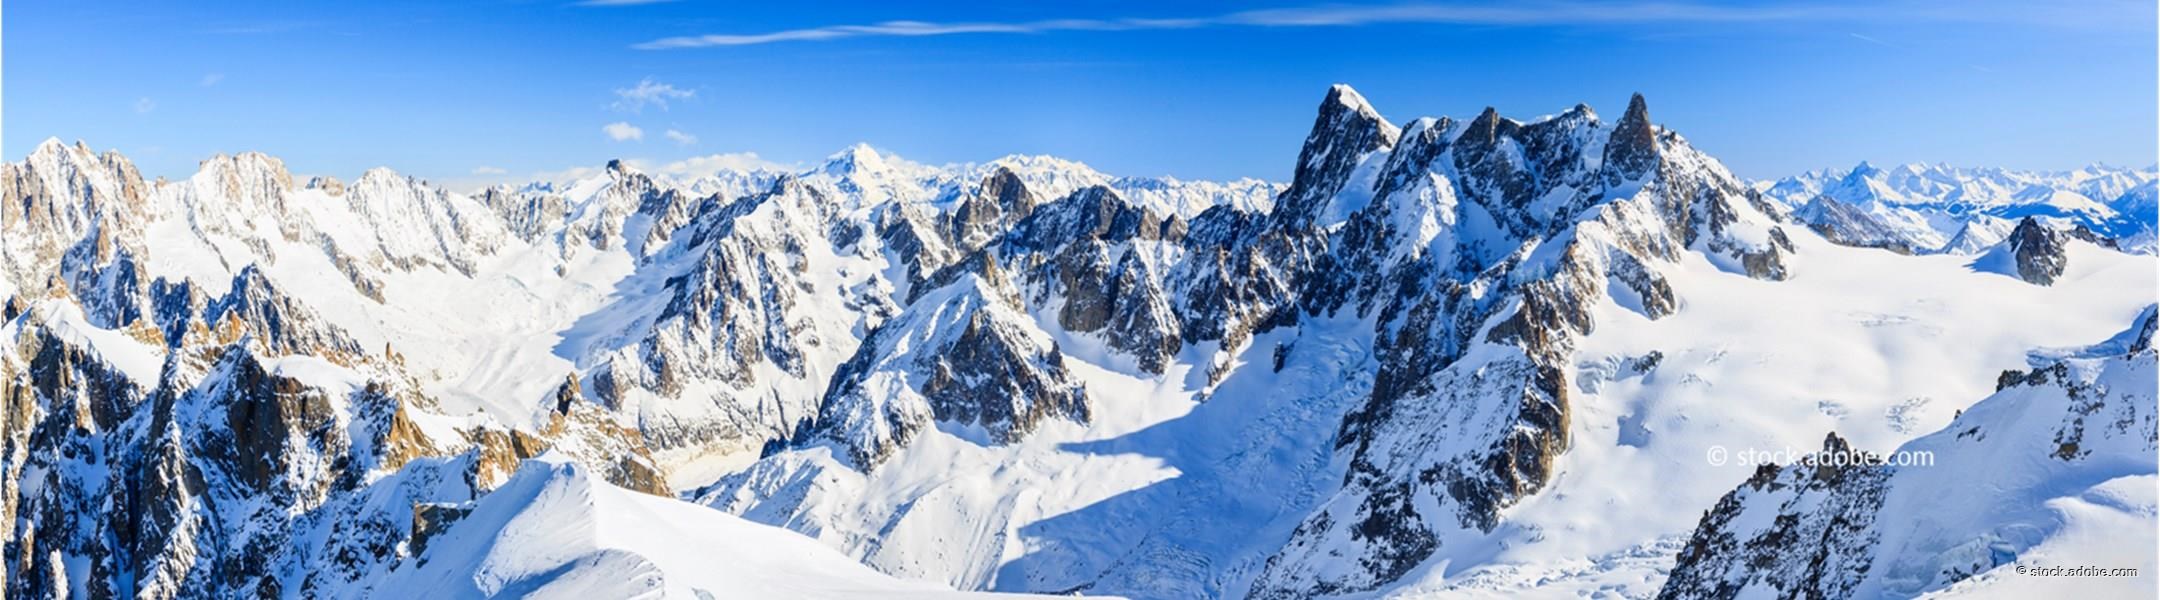 Ausblick von Aiguille du Midi bei Chamonix auf Mont Blanc 